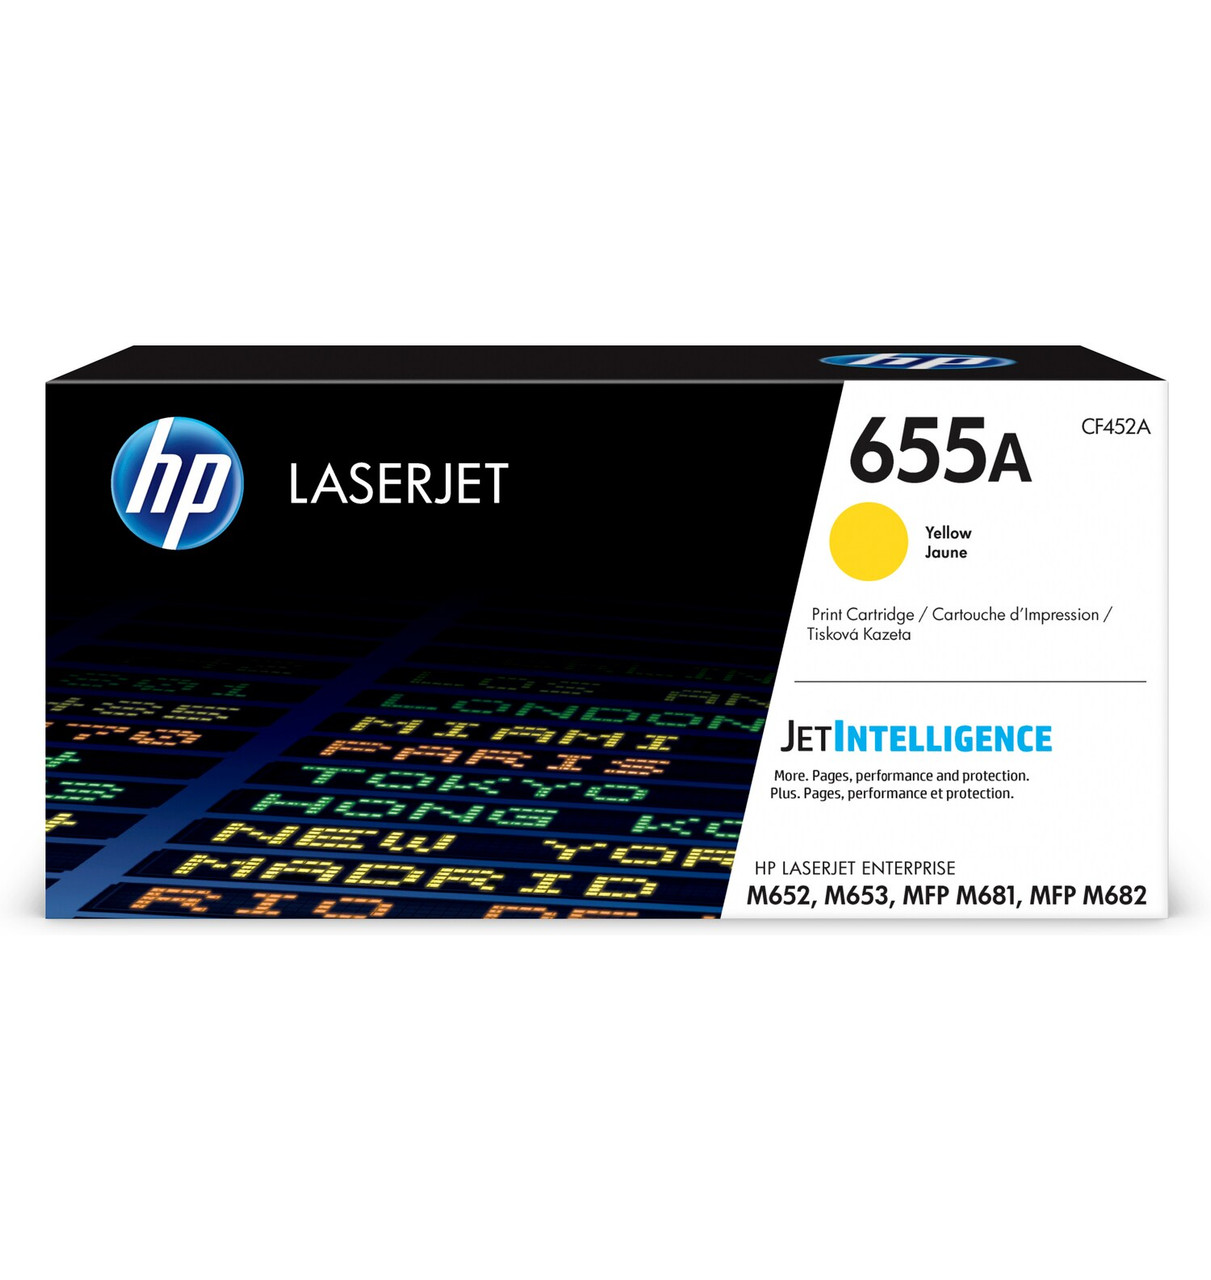 HP LaserJet Enterprise 655A Yellow Print Cartridge - EMEA